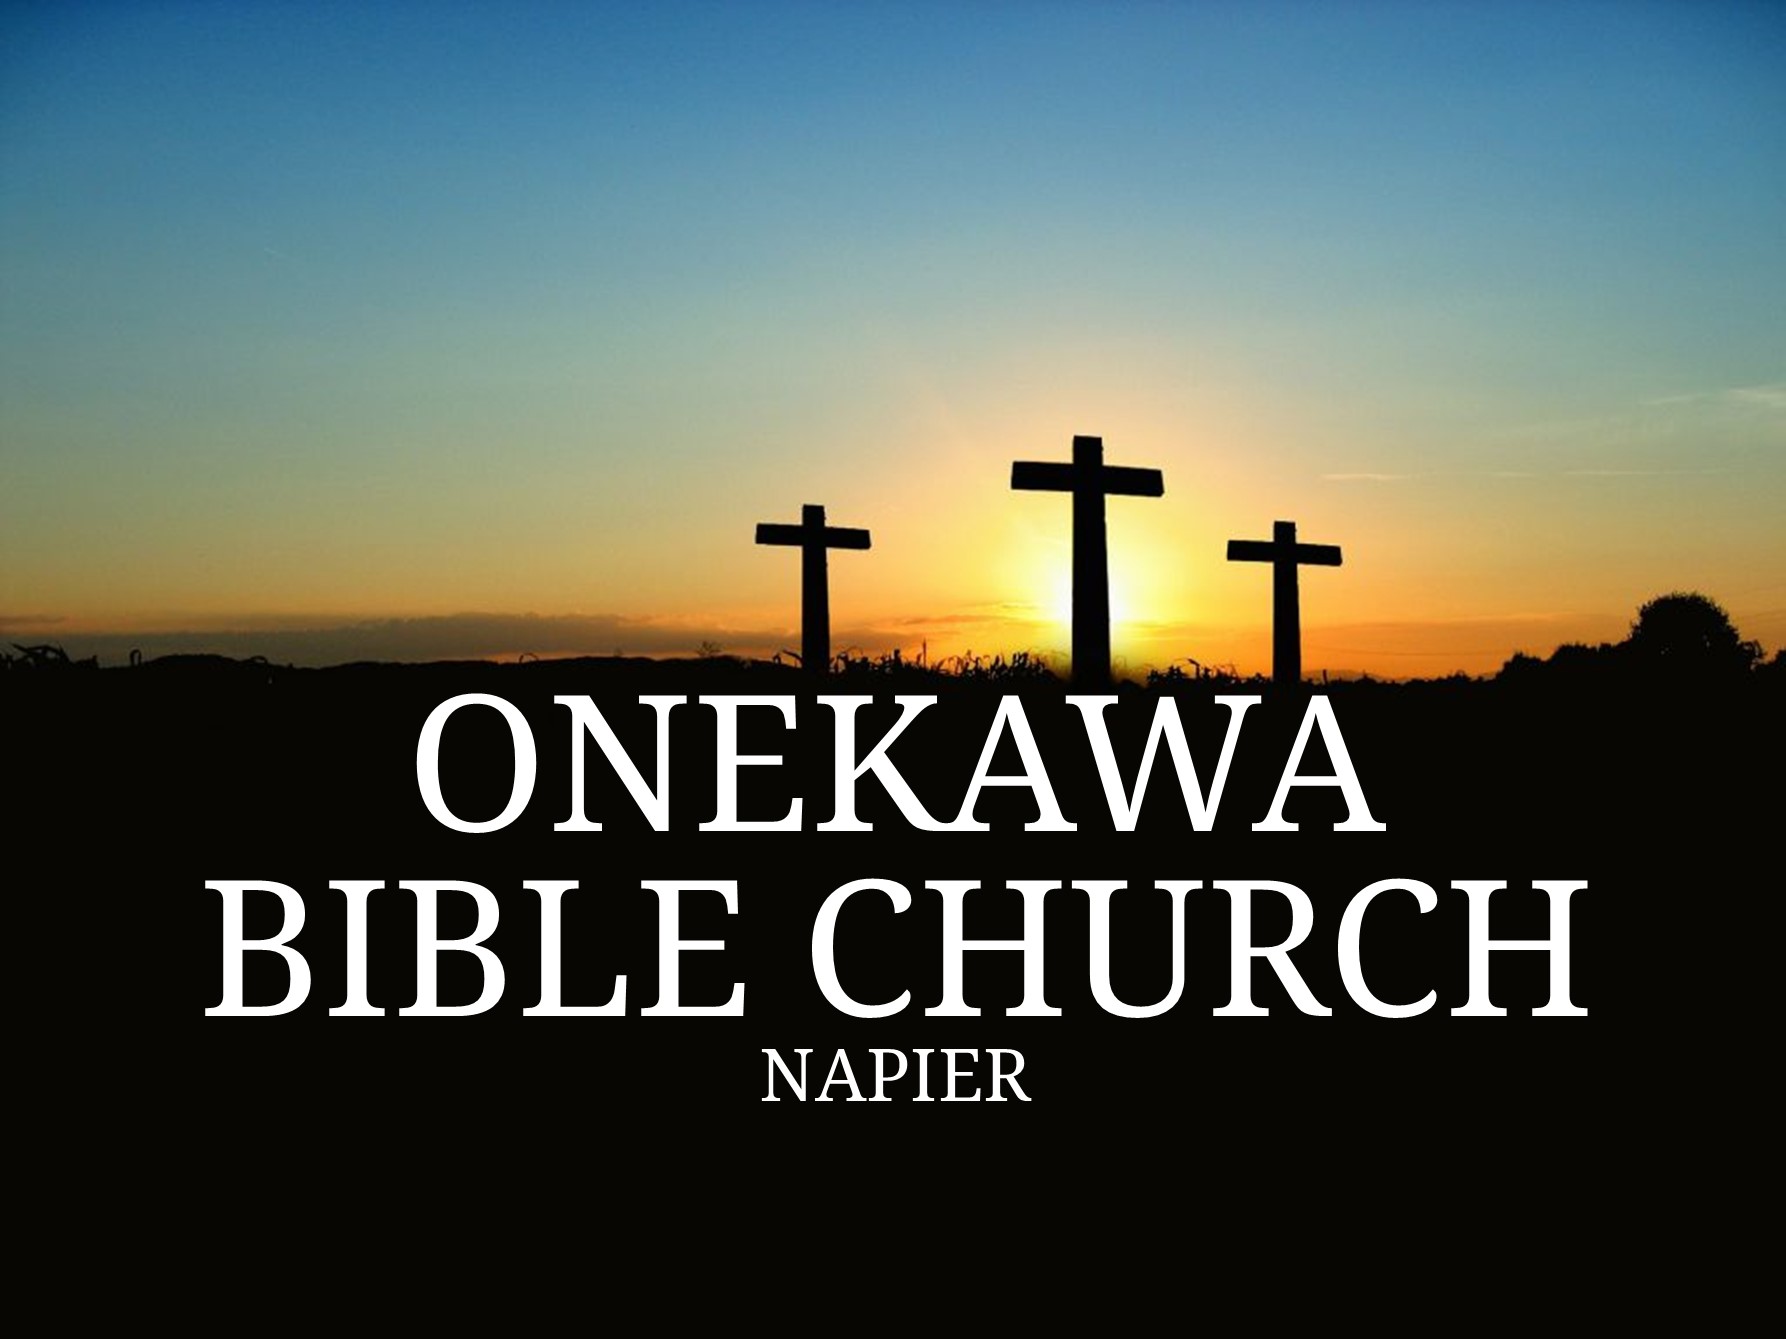 Onekawa Bible Church